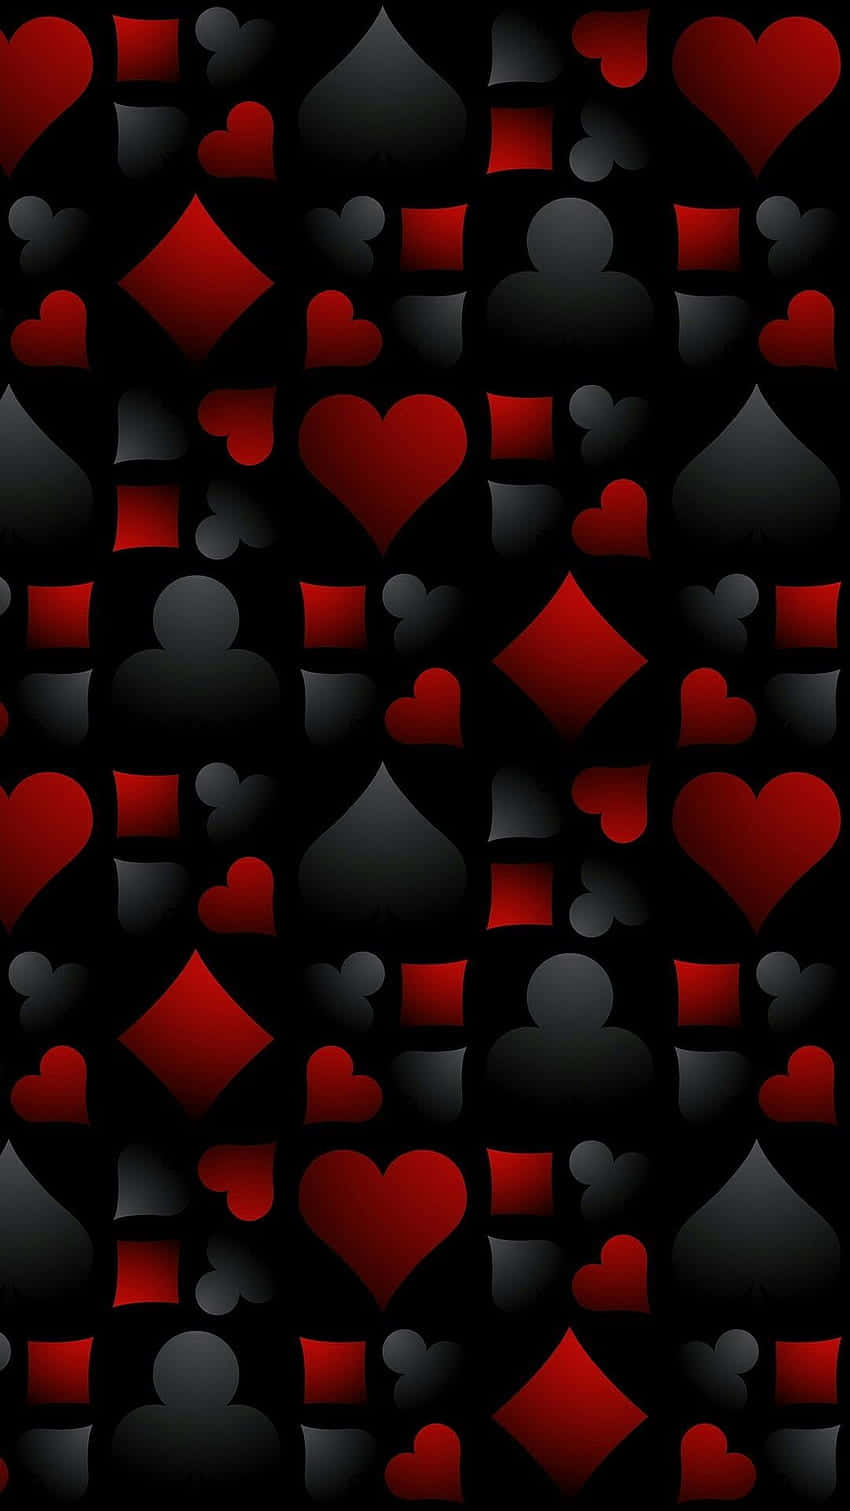 Einschwarzes Und Rotes Muster Mit Herzen Und Spielkarten Wallpaper